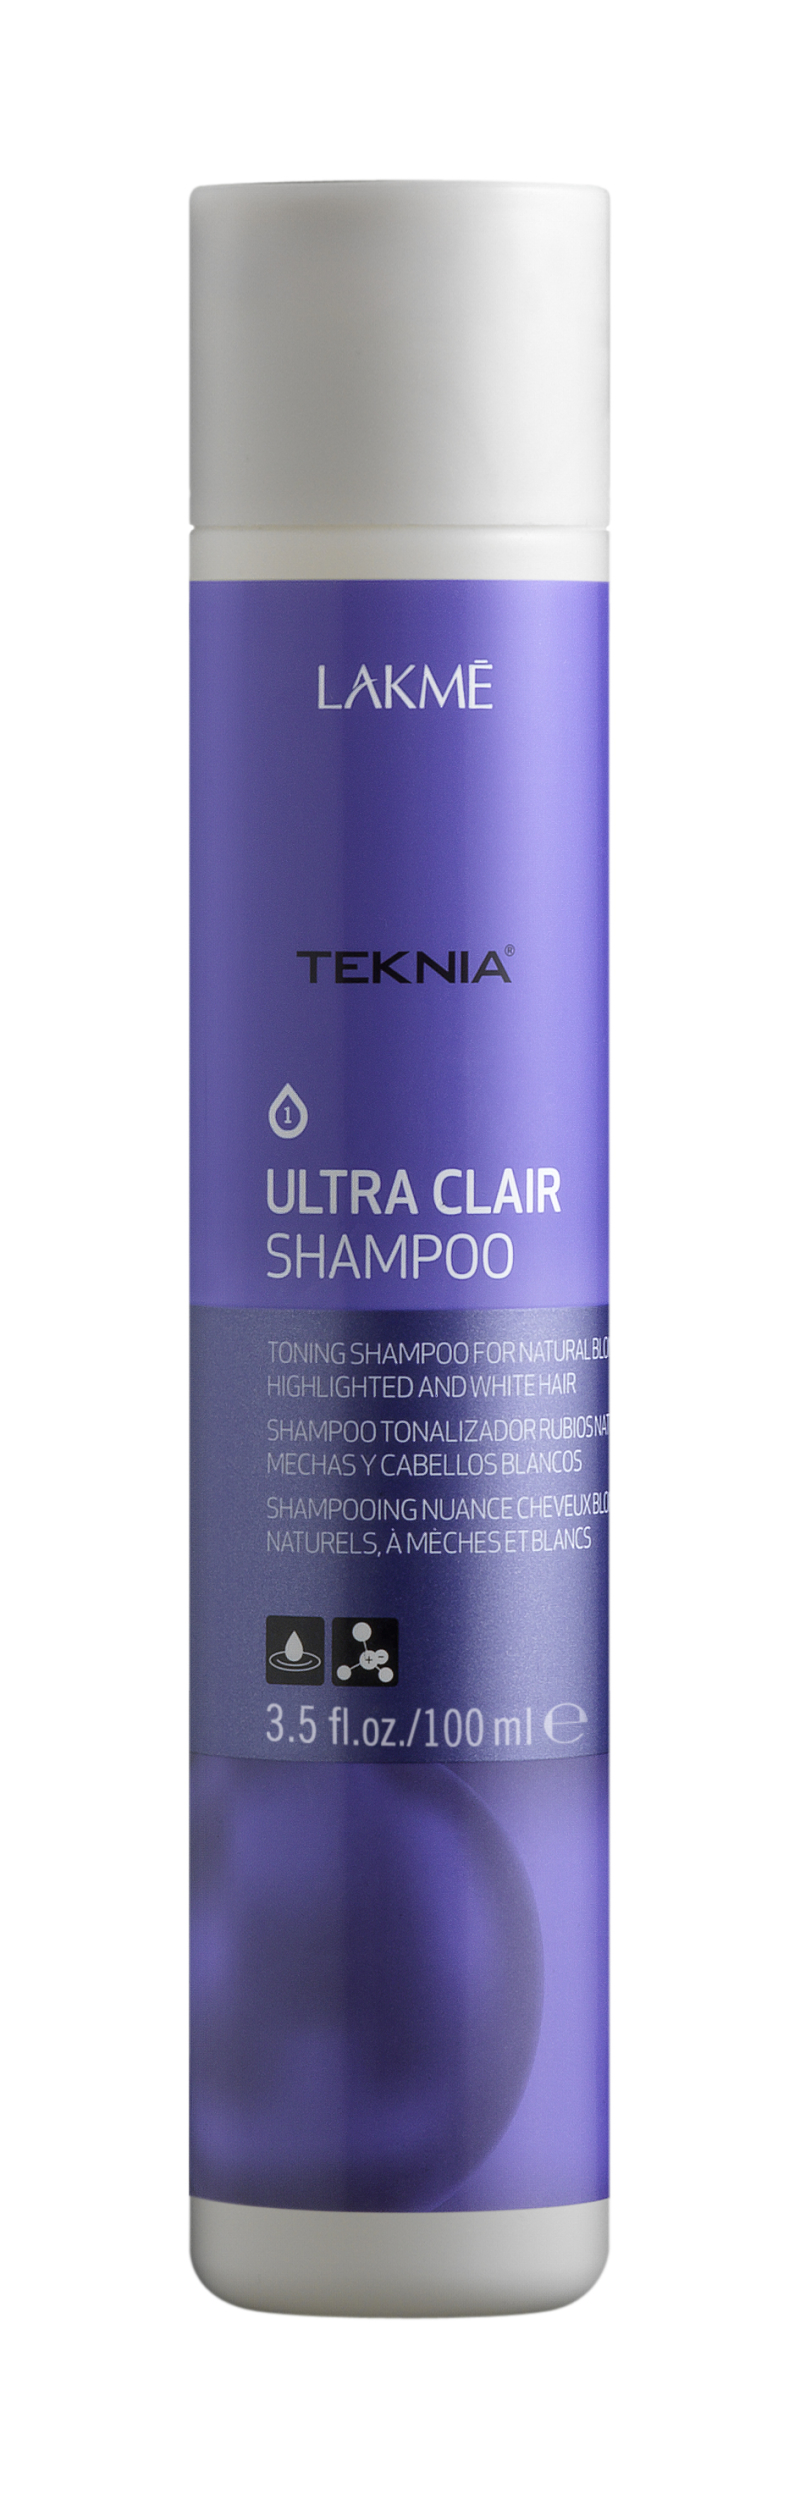 ULTRA CLAIR SHAMPOO Шампунь тонирующий для светлых оттенков волос (100 мл)